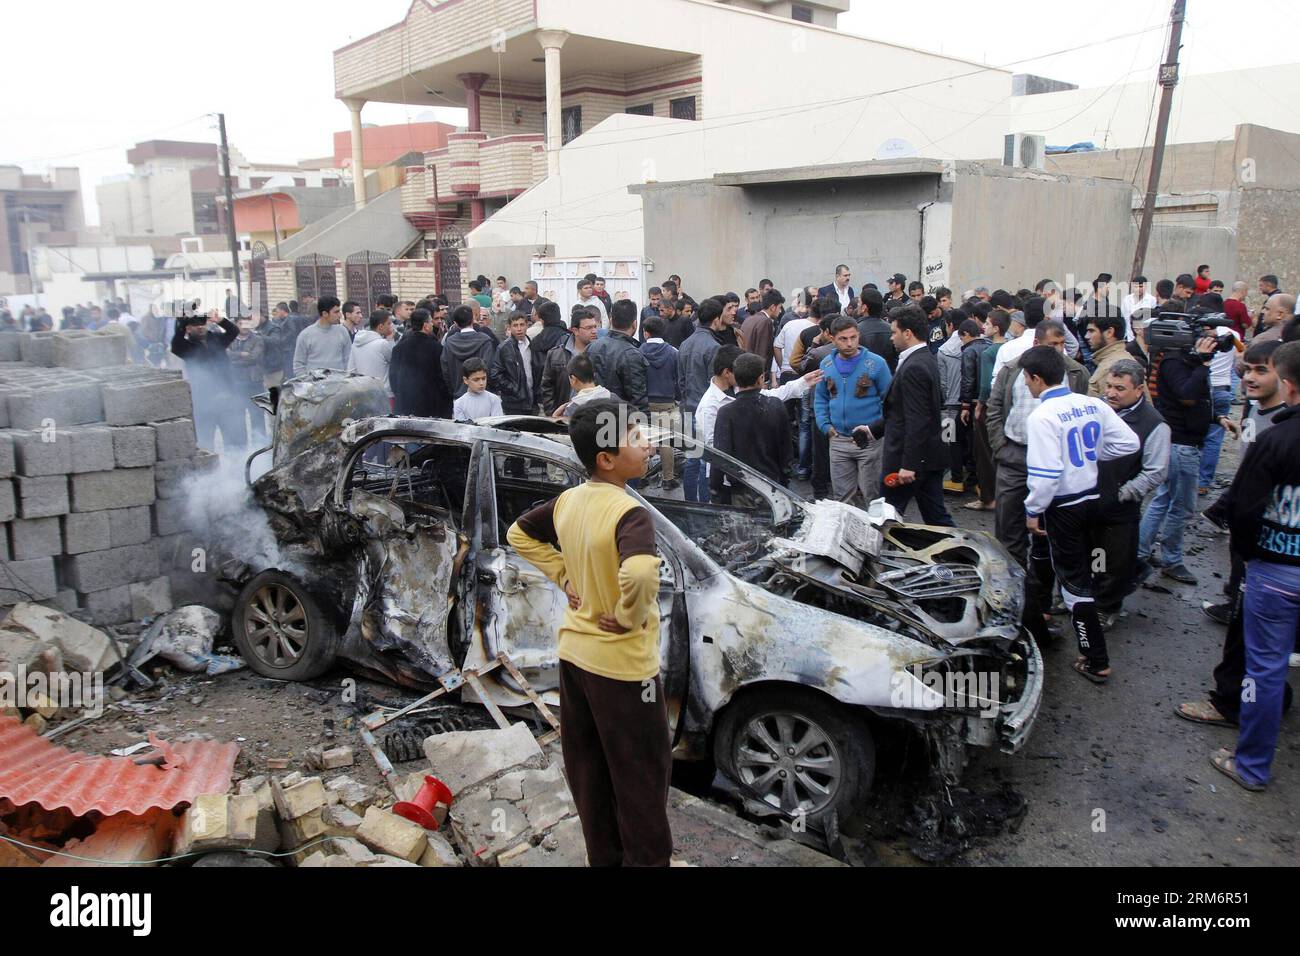 (140126) -- KIRKOUK, 26 janv. 2014 (Xinhua) -- des gens se rassemblent autour d'un véhicule endommagé sur le site de l'explosion à Kirkouk, Irak, le 26 janvier 2014. Au moins quatre personnes ont été tuées et 14 blessées dans l'après-midi lorsque trois voitures piégées ont explosé presque simultanément dans des quartiers distincts de la ville de Kirkouk, à environ 250 km au nord de Bagdad, la capitale irakienne, a déclaré à Xinhua une source policière locale sous couvert d'anonymat. (Xinhua/Dena Assad) (zjl) IRAK-KIRKOUK-BLAST PUBLICATIONxNOTxINxCHN Kirkouk Jan 26 2014 des célébrités XINHUA se rassemblent autour d'un véhicule endommagé SUR le site de Blast à Kirkouk Irak LE 26 2 janvier Banque D'Images